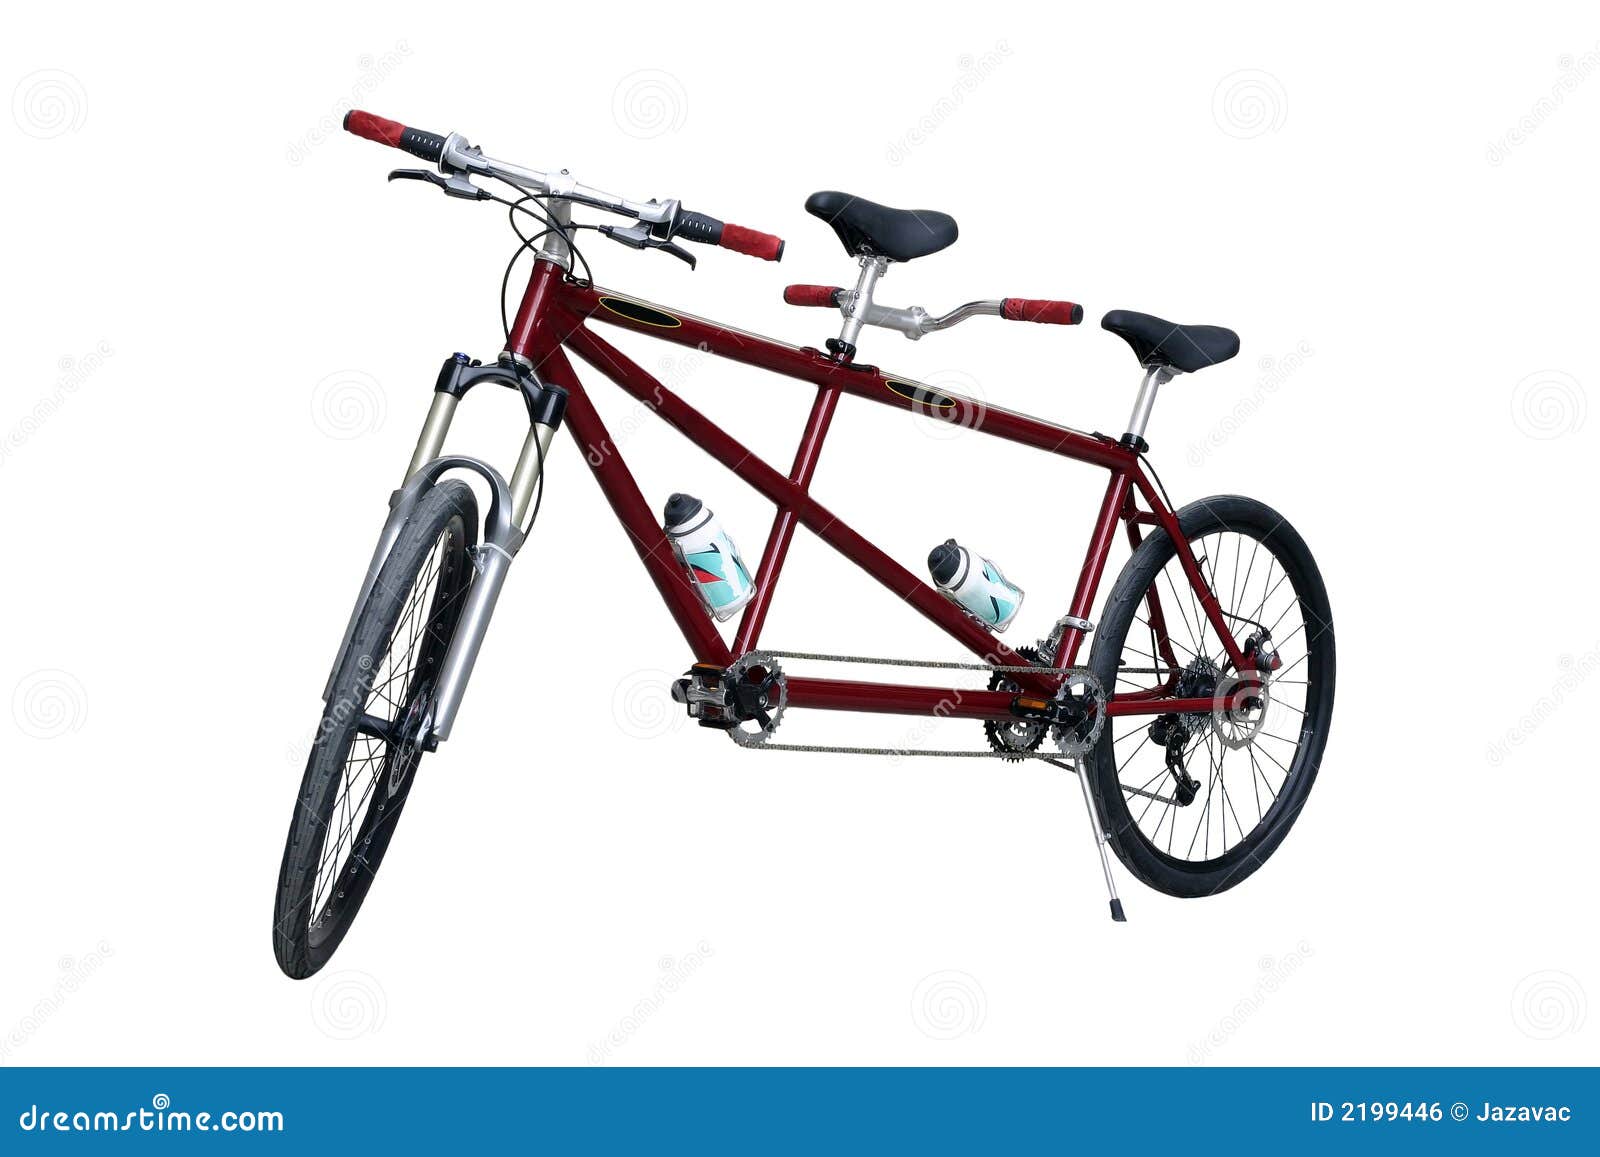 3.200+ Tandem Bike Fotografías de stock, fotos e imágenes libres